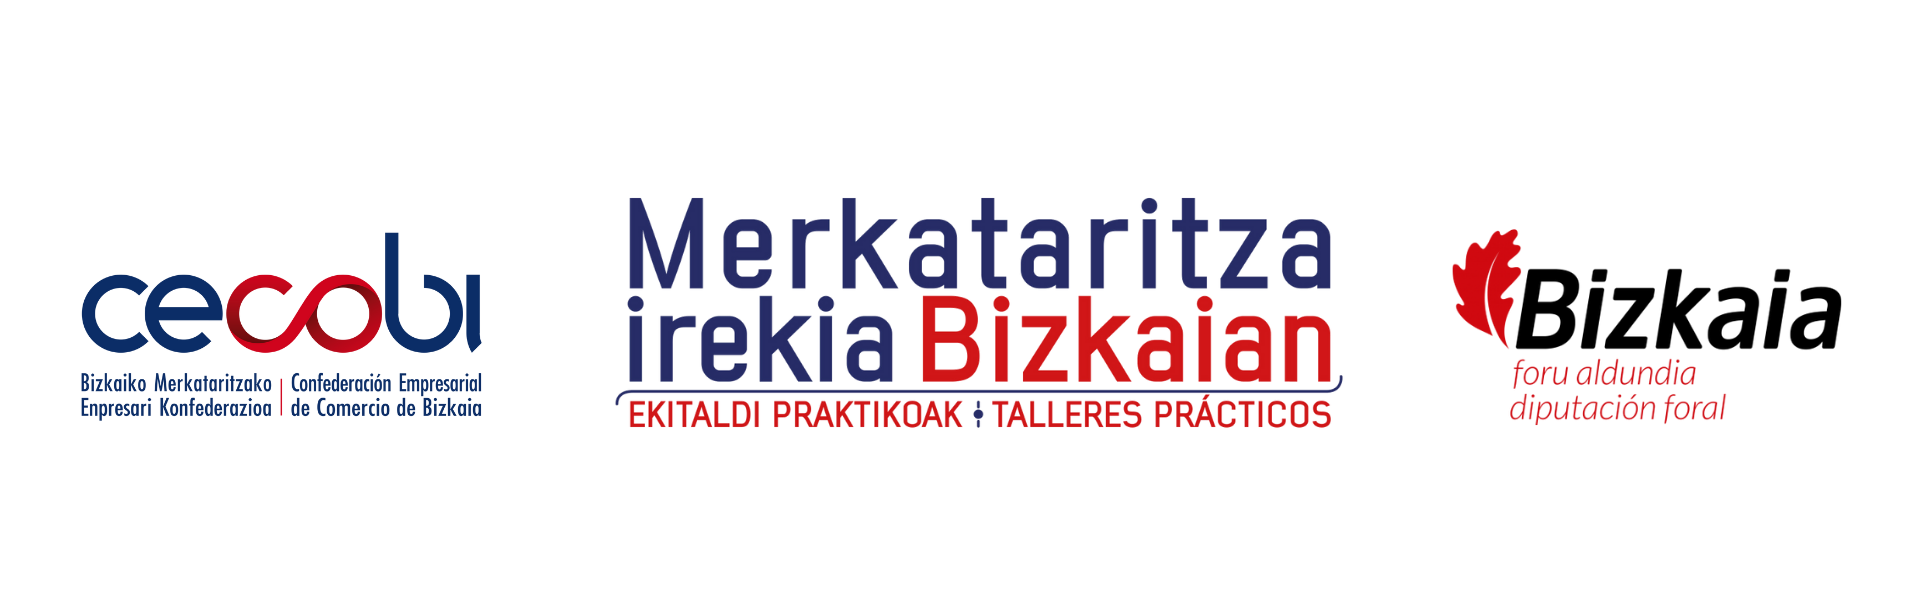 CECOBI-Merkataritza_Irekia_Bizkaian-Bizkaia_Foru_Aldundia